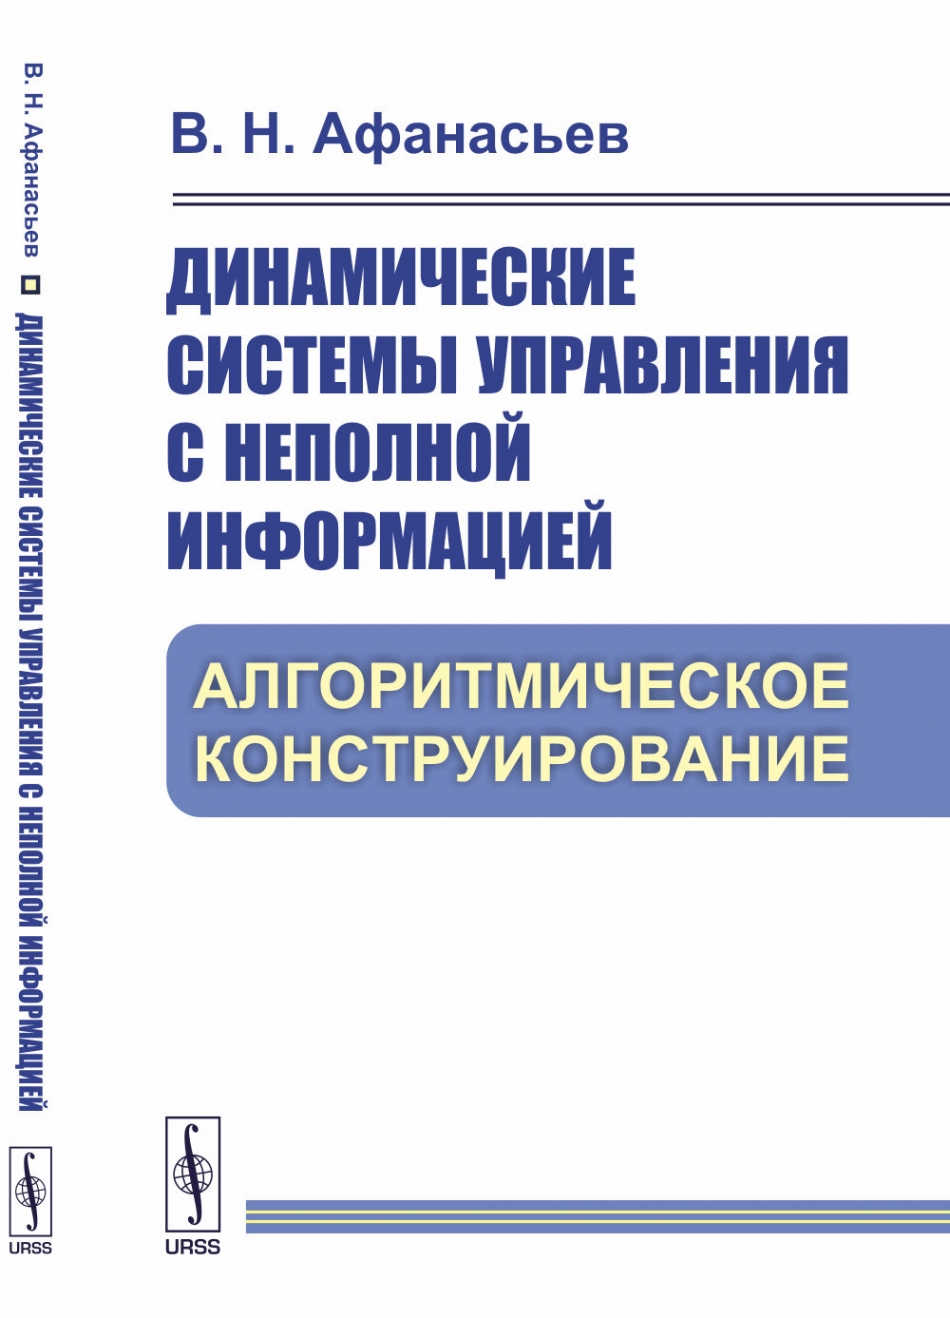 Афанасьев В.Н. Динамические системы управления с неполной информацией. Алгоритмическое конструирование 